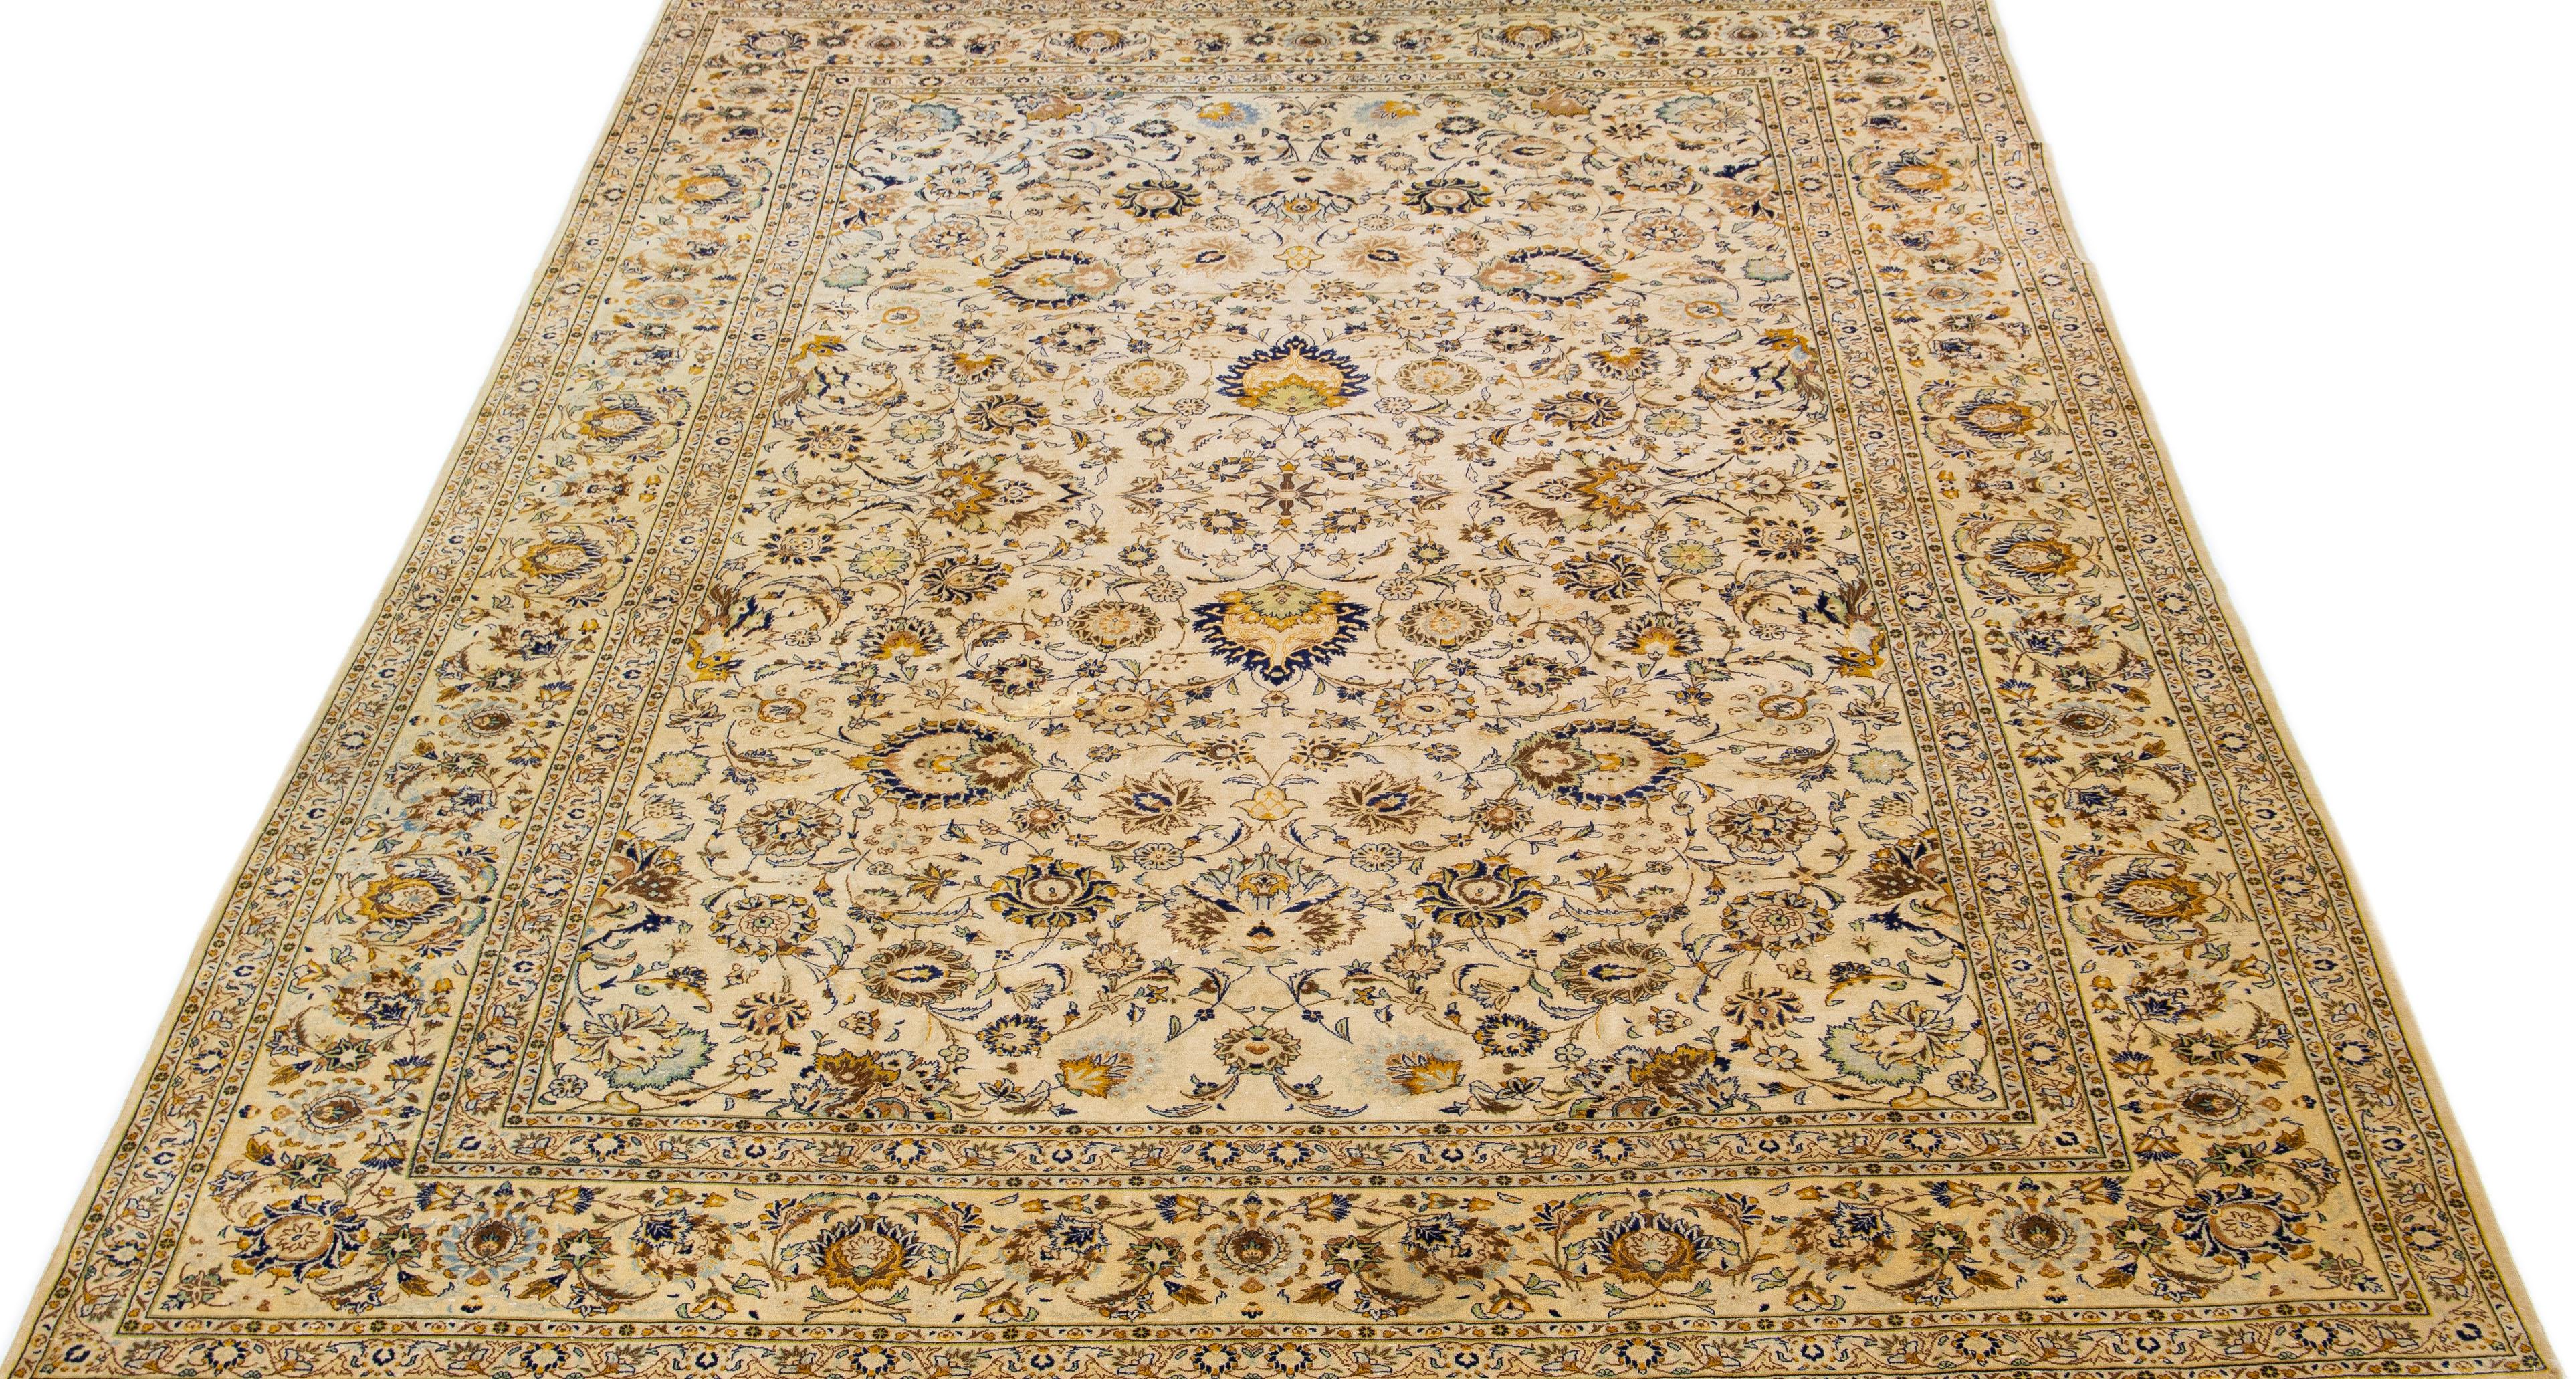 Schöner antiker Kashan Teppich aus handgeknüpfter Wolle mit beigem Farbfeld. Dieser Perserteppich hat blaue, gelbe und braune Akzente in einem prächtigen klassischen Blumenmuster. 

Dieser Teppich misst 10'4